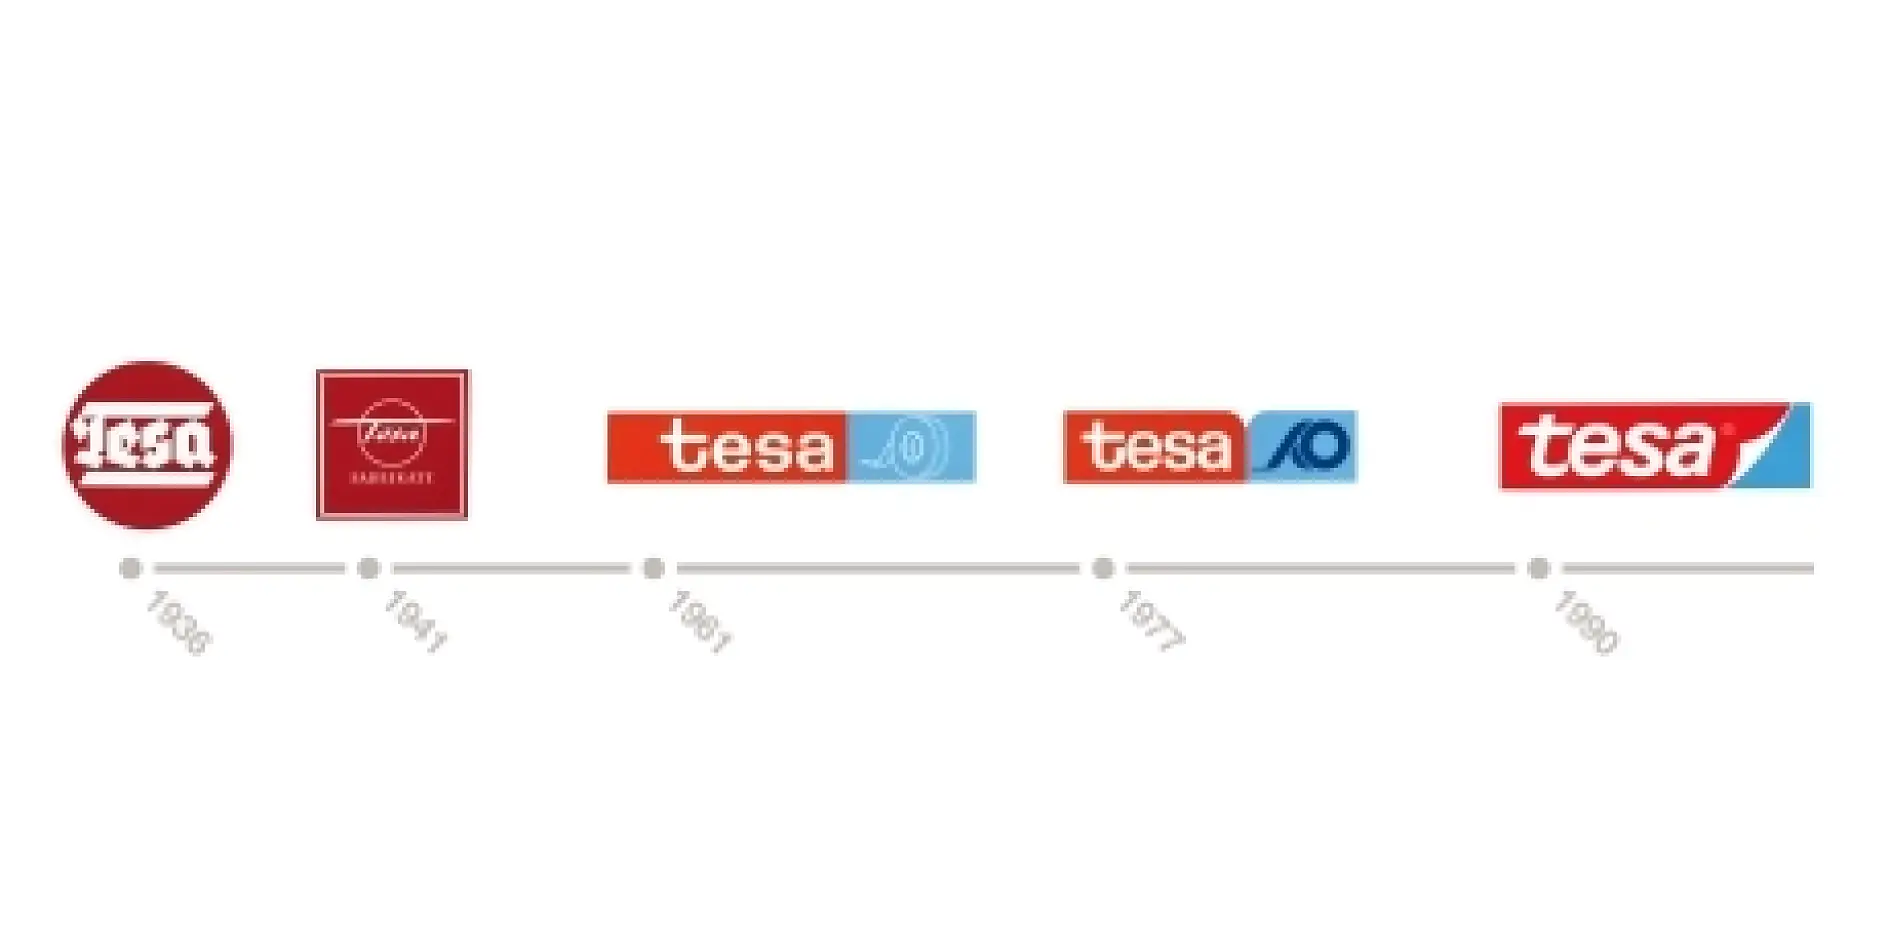 tesaというブランド名は、立ち上げ当初からそのままです。1990年に初めて採用した新しいブランドロゴは、両面粘着テープのライナー（剥離紙）をめくるような動きを盛り込んだデザイン。90年代から一貫して、現在でもこのロゴデザインを使用しています。大きなデザイン変更を行わないことで、ブランドの不変性を象徴しています。